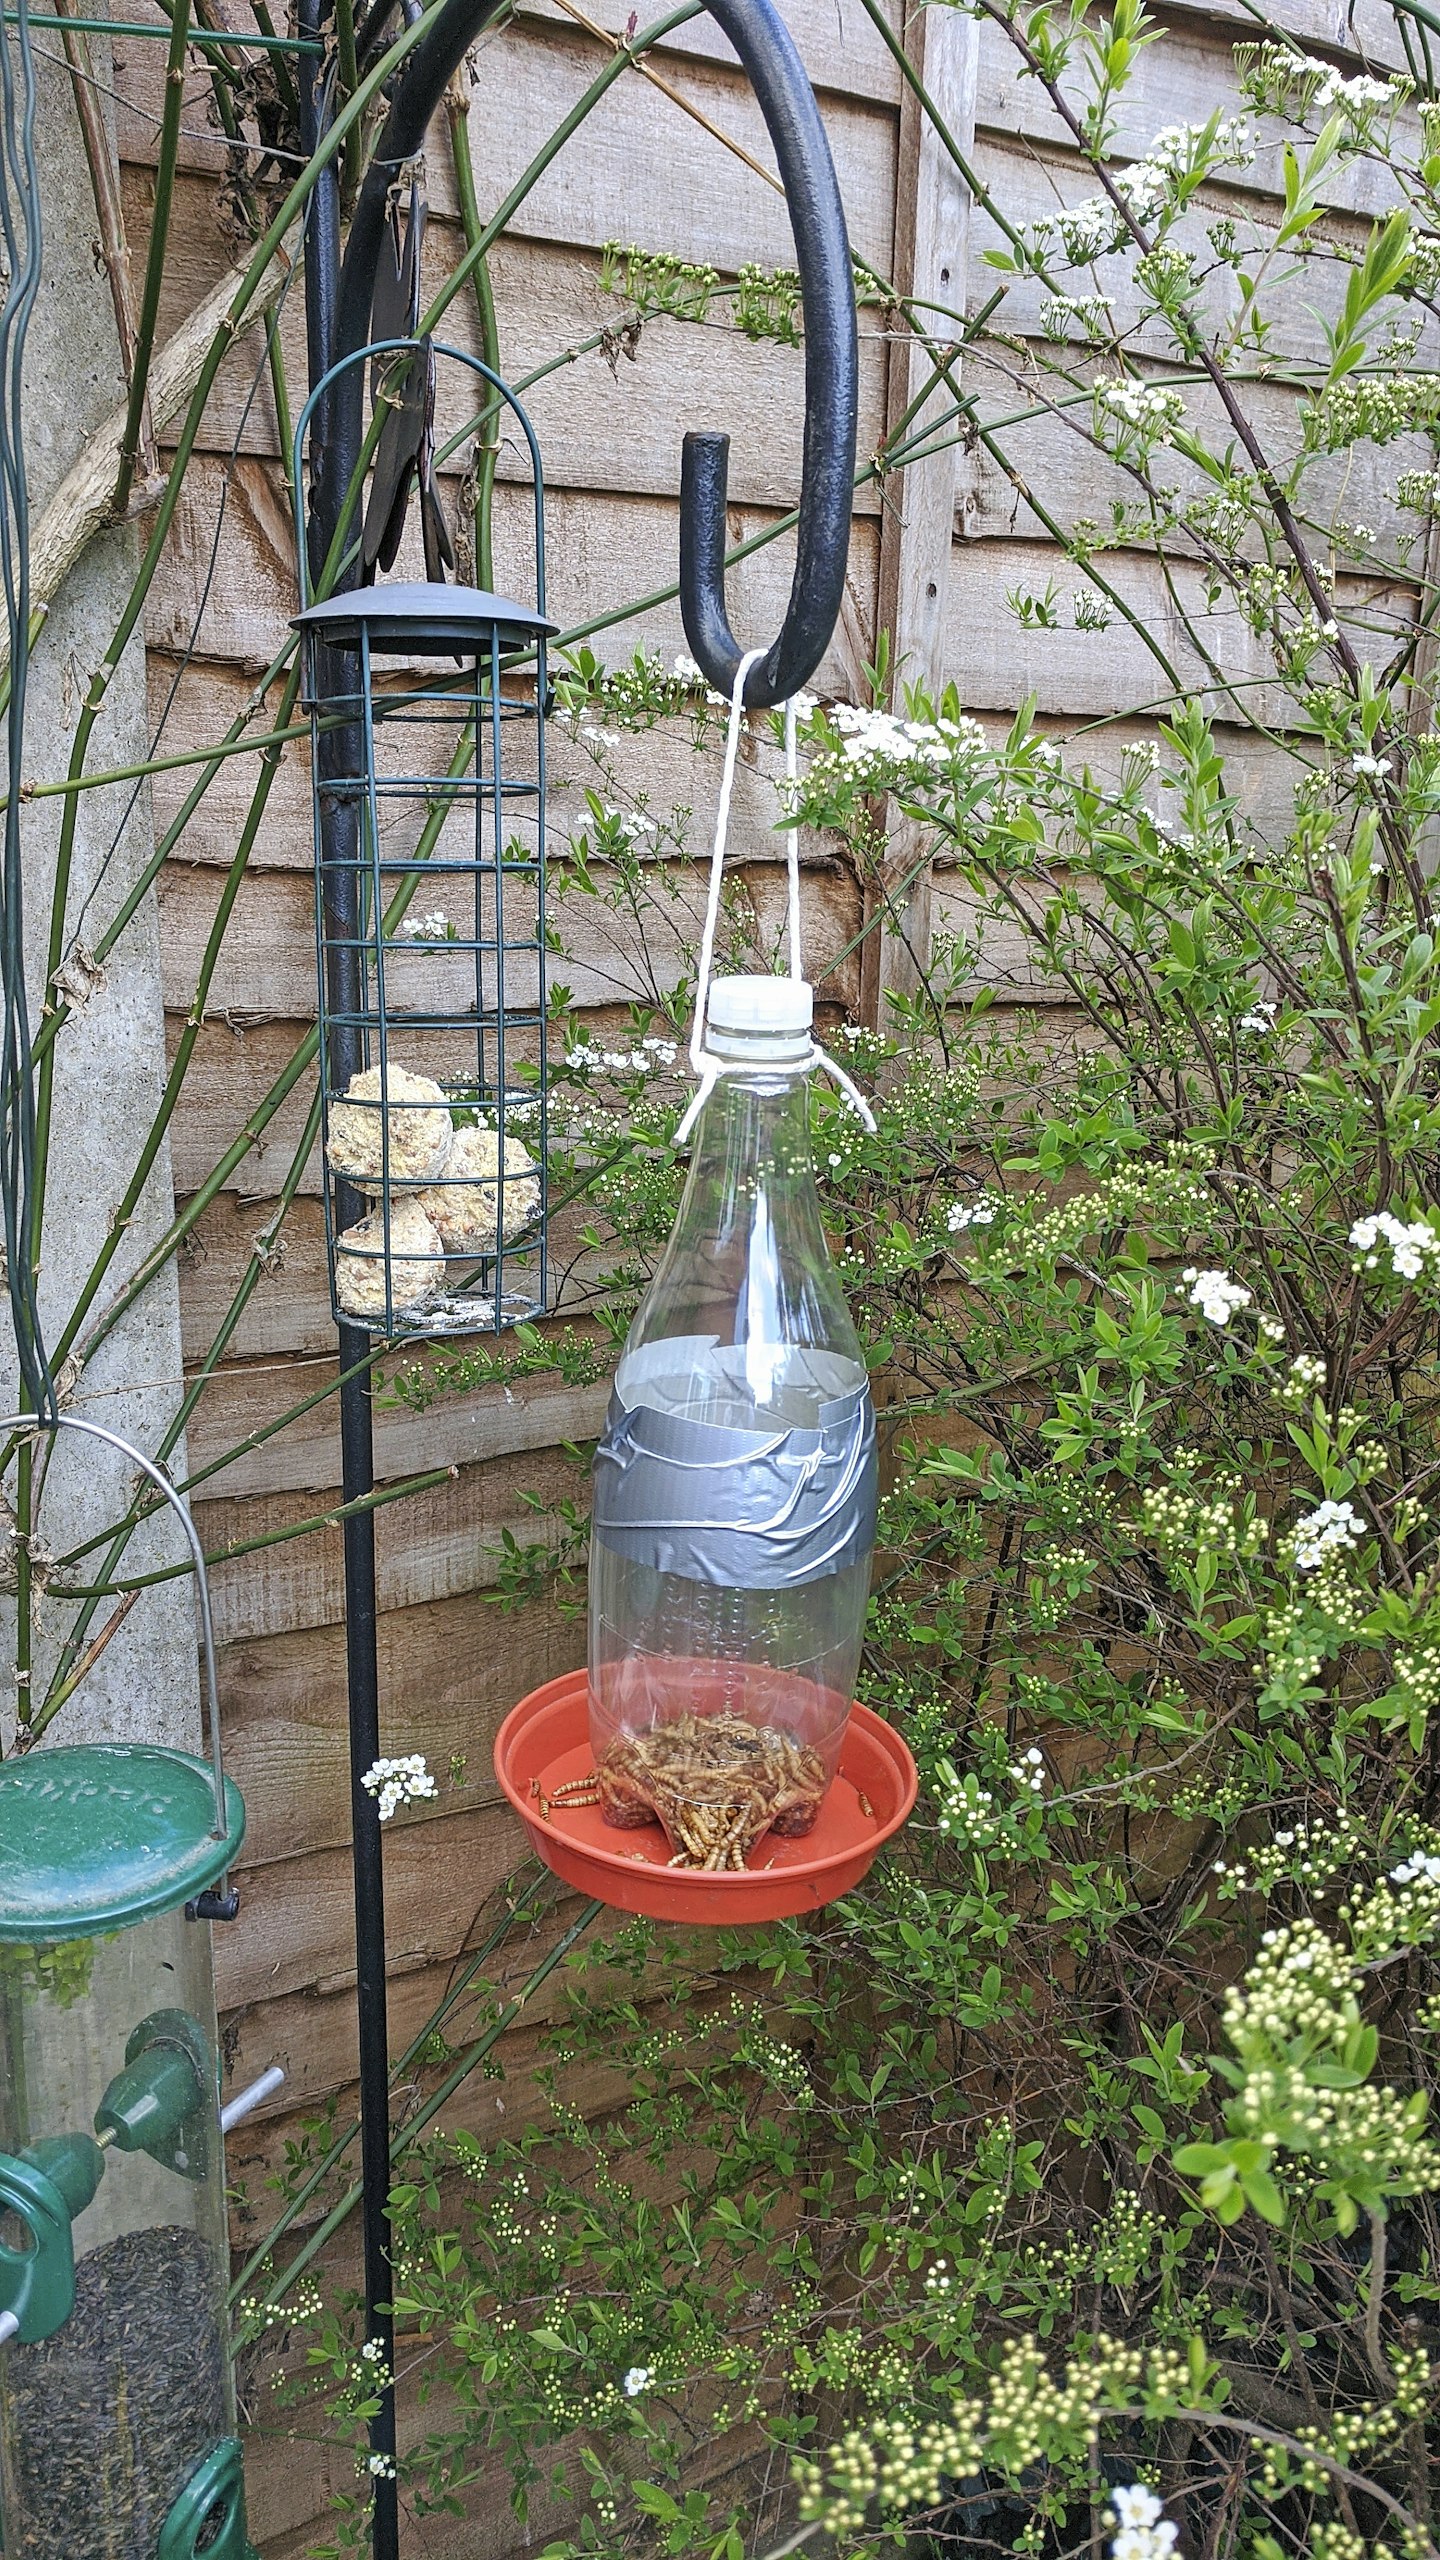 Bottle bird feeder